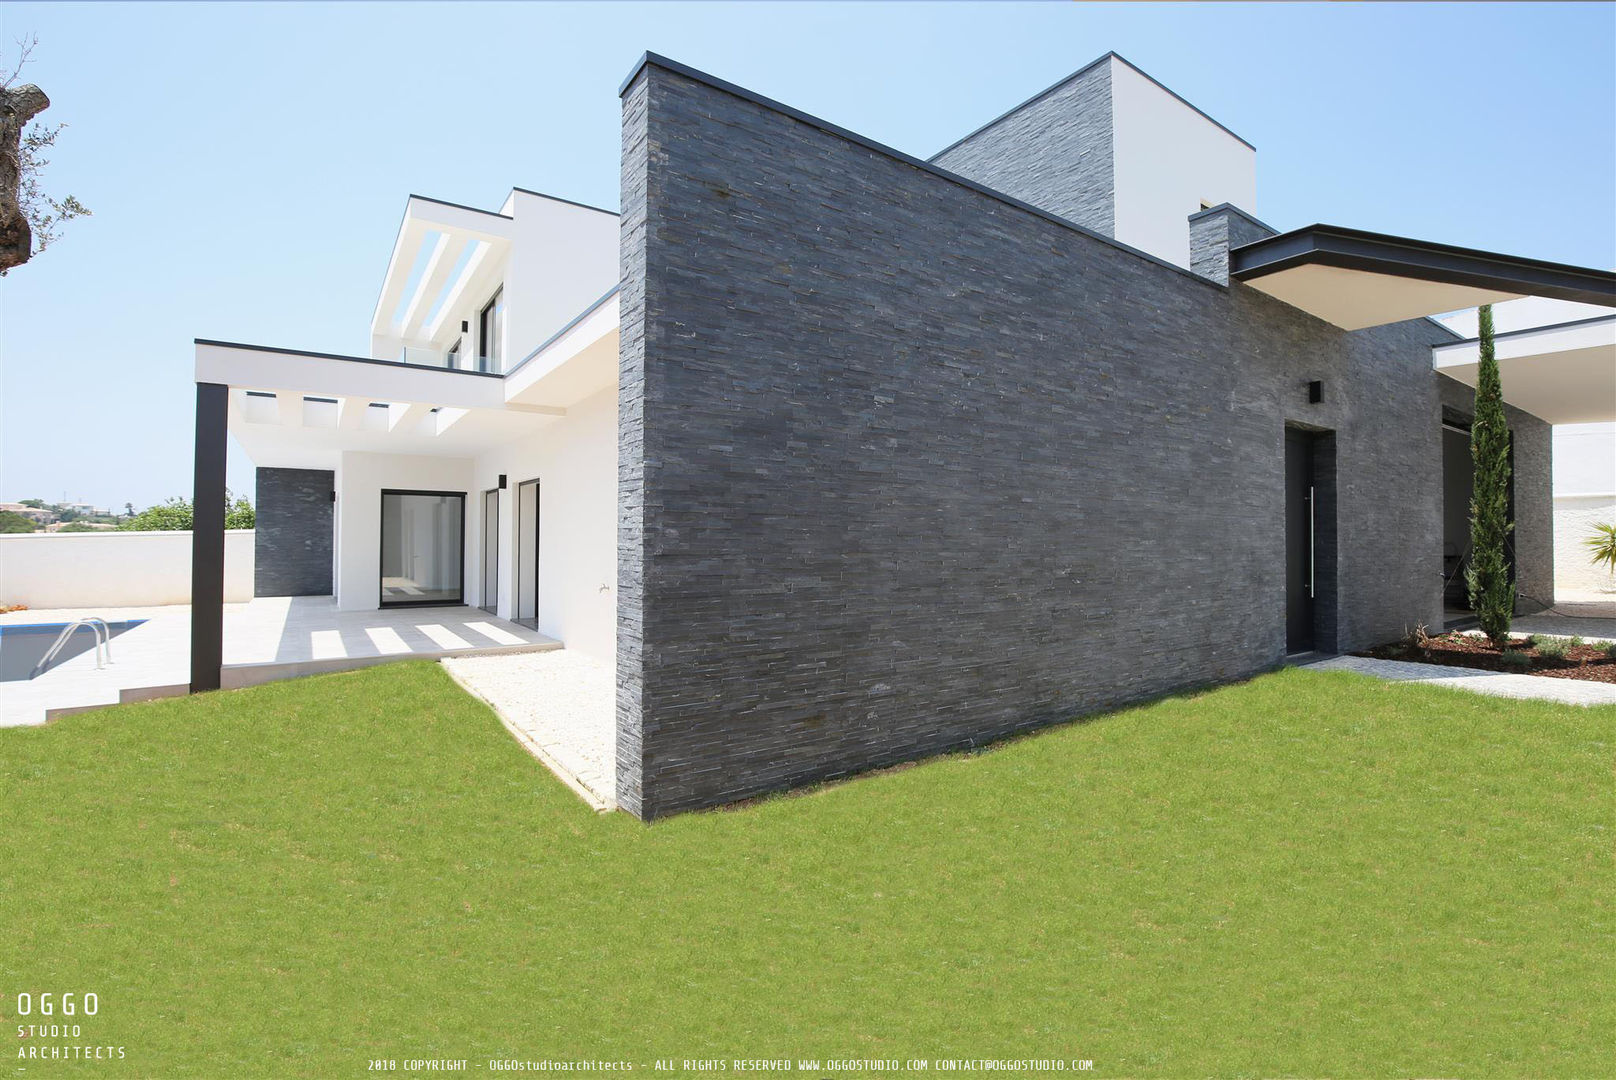 Entrada de casa com 3 quartos de arquitectura contemporânea OGGOstudioarchitects, unipessoal lda Casas minimalistas Quinta da Bela Vista,Moradia,Algarve,muro,xisto